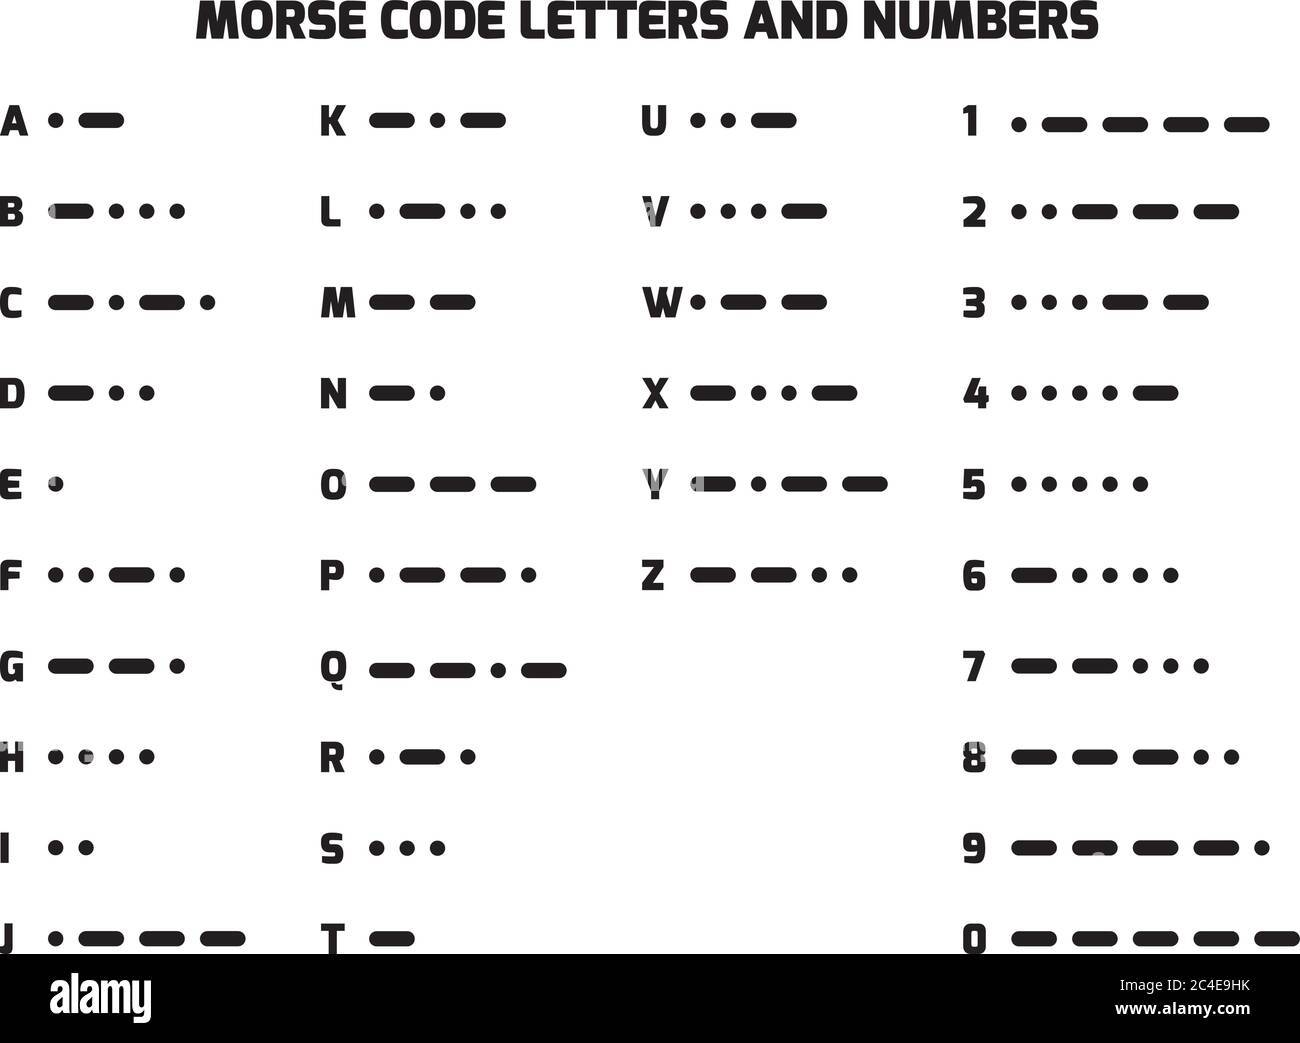 International Telegraph Morse Code Alphabet. Buchstaben A bis Z und Zahlen in Punkte und Bindestriche übersetzt. Methode zur Übertragung von Text als ein-/Ausschalttöne, Lichter oder Klicks. Einfache flache vectror Abbildung. Stock Vektor